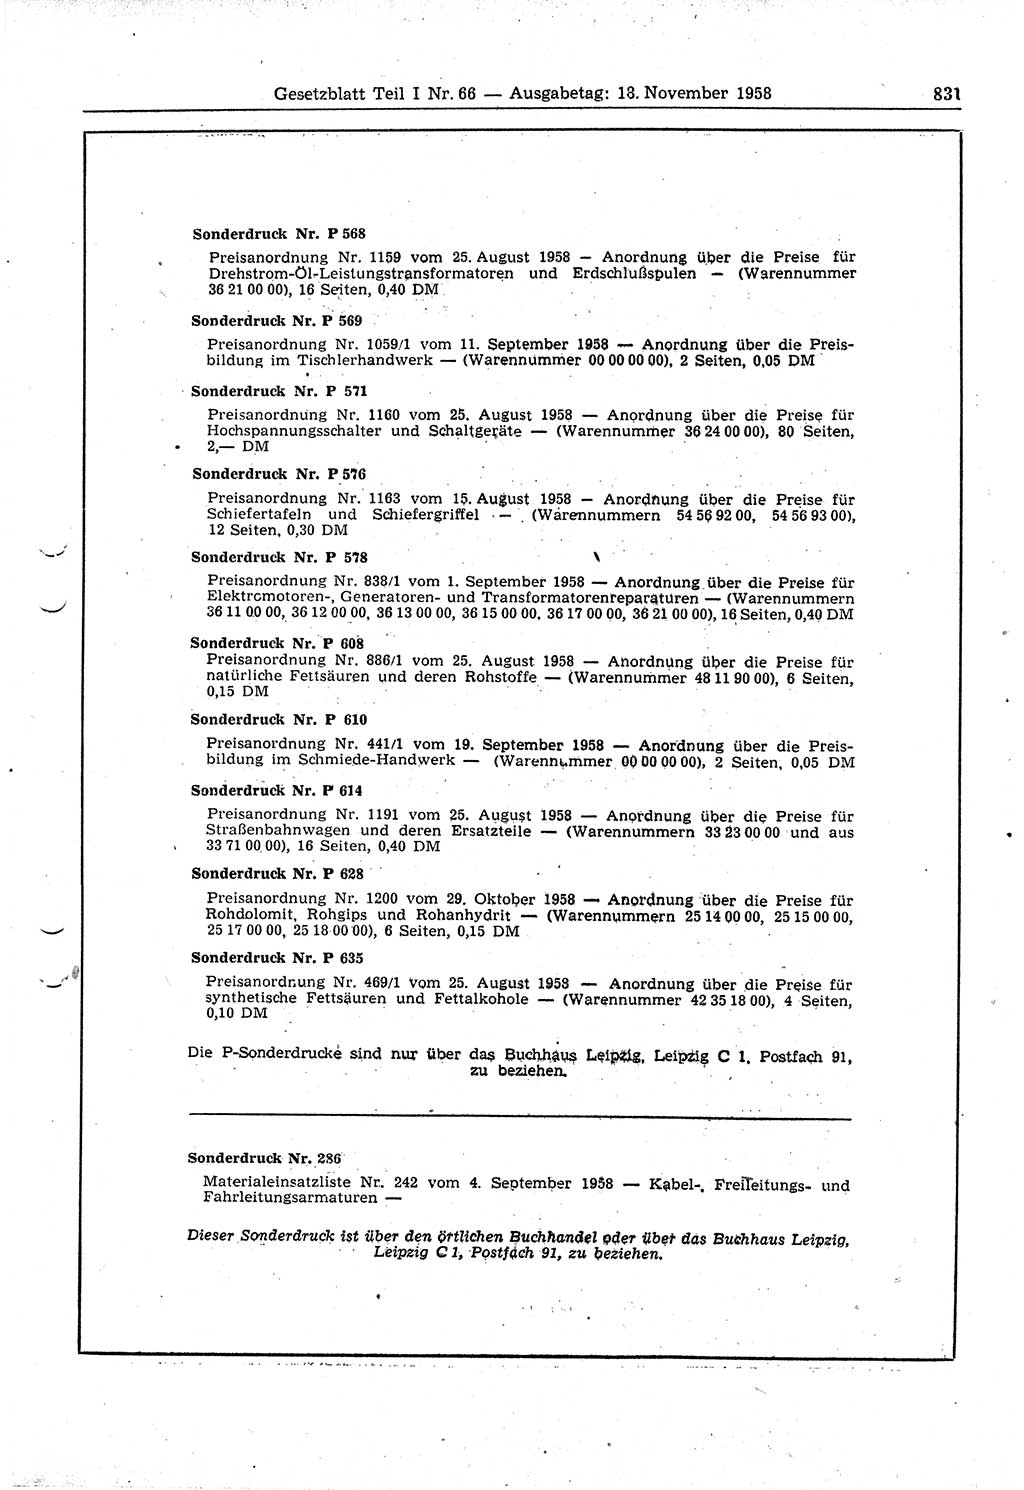 Gesetzblatt (GBl.) der Deutschen Demokratischen Republik (DDR) Teil Ⅰ 1958, Seite 831 (GBl. DDR Ⅰ 1958, S. 831)